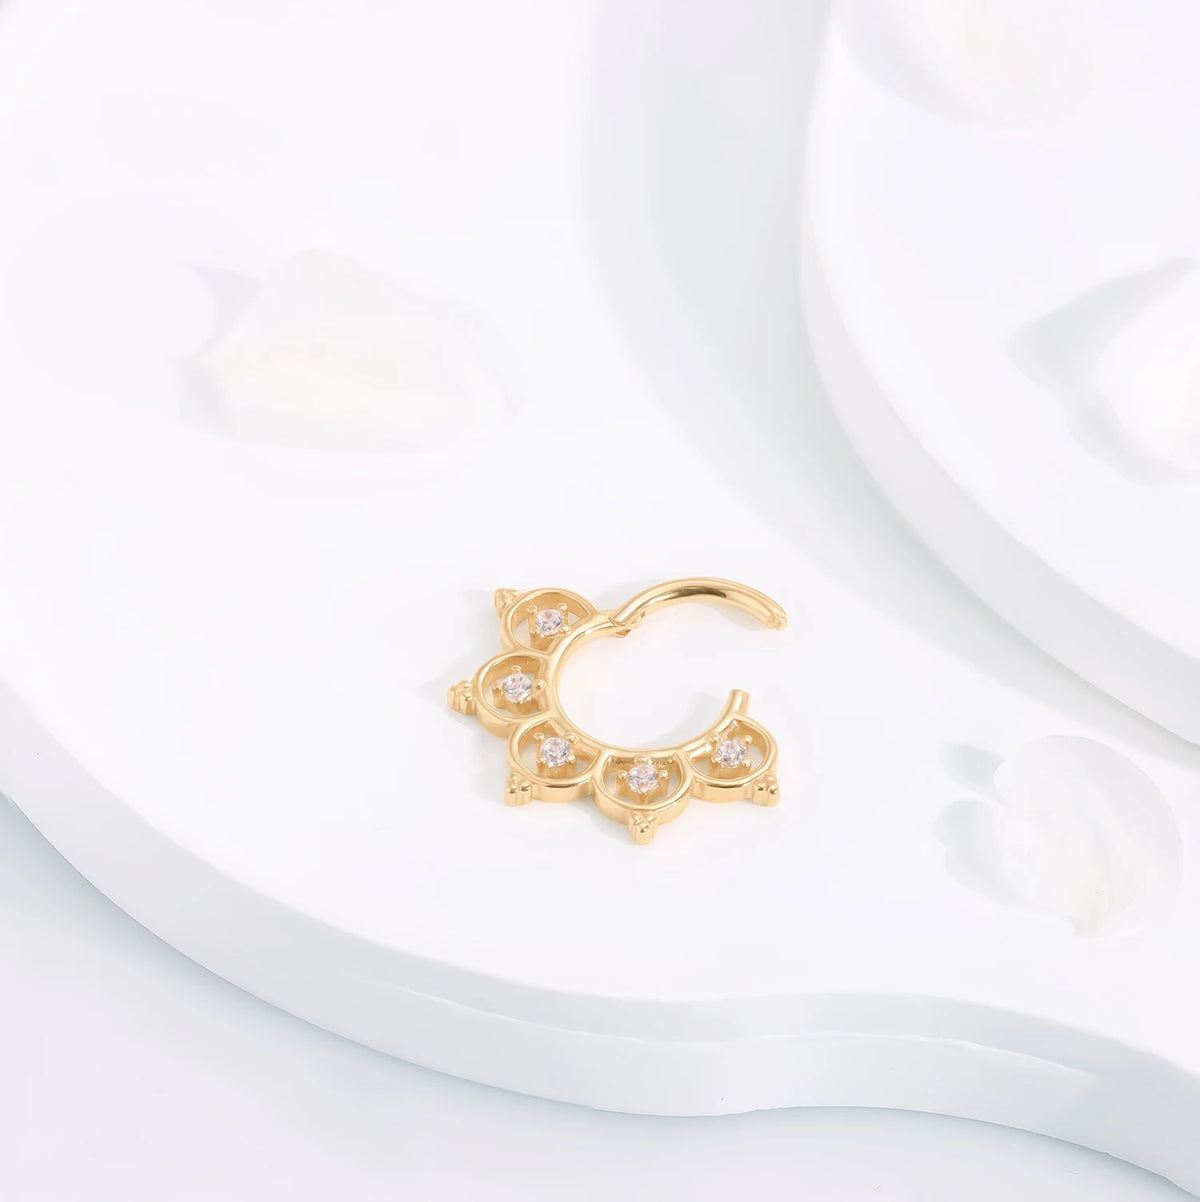 Clicker de tabique de oro de 14K, pendiente daith muy elegante y único, anillo clicker de segmento con bisagras, anillo de nariz